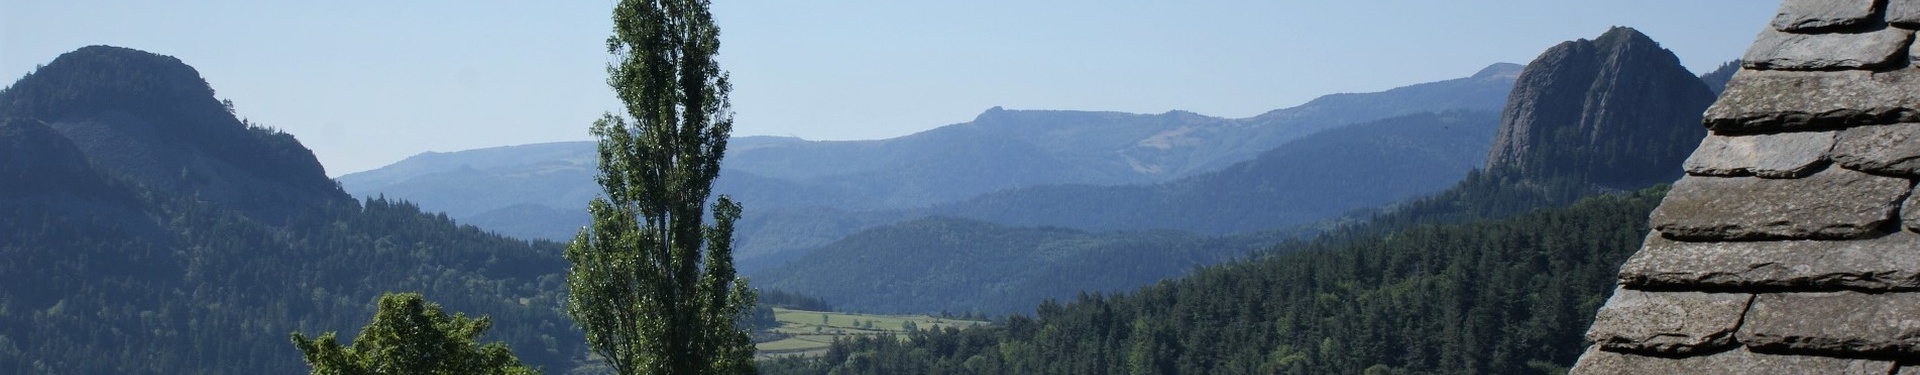 Rando liberté : partage des eaux et GR®7 des Monts d’Ardèche | Aluna Voyages